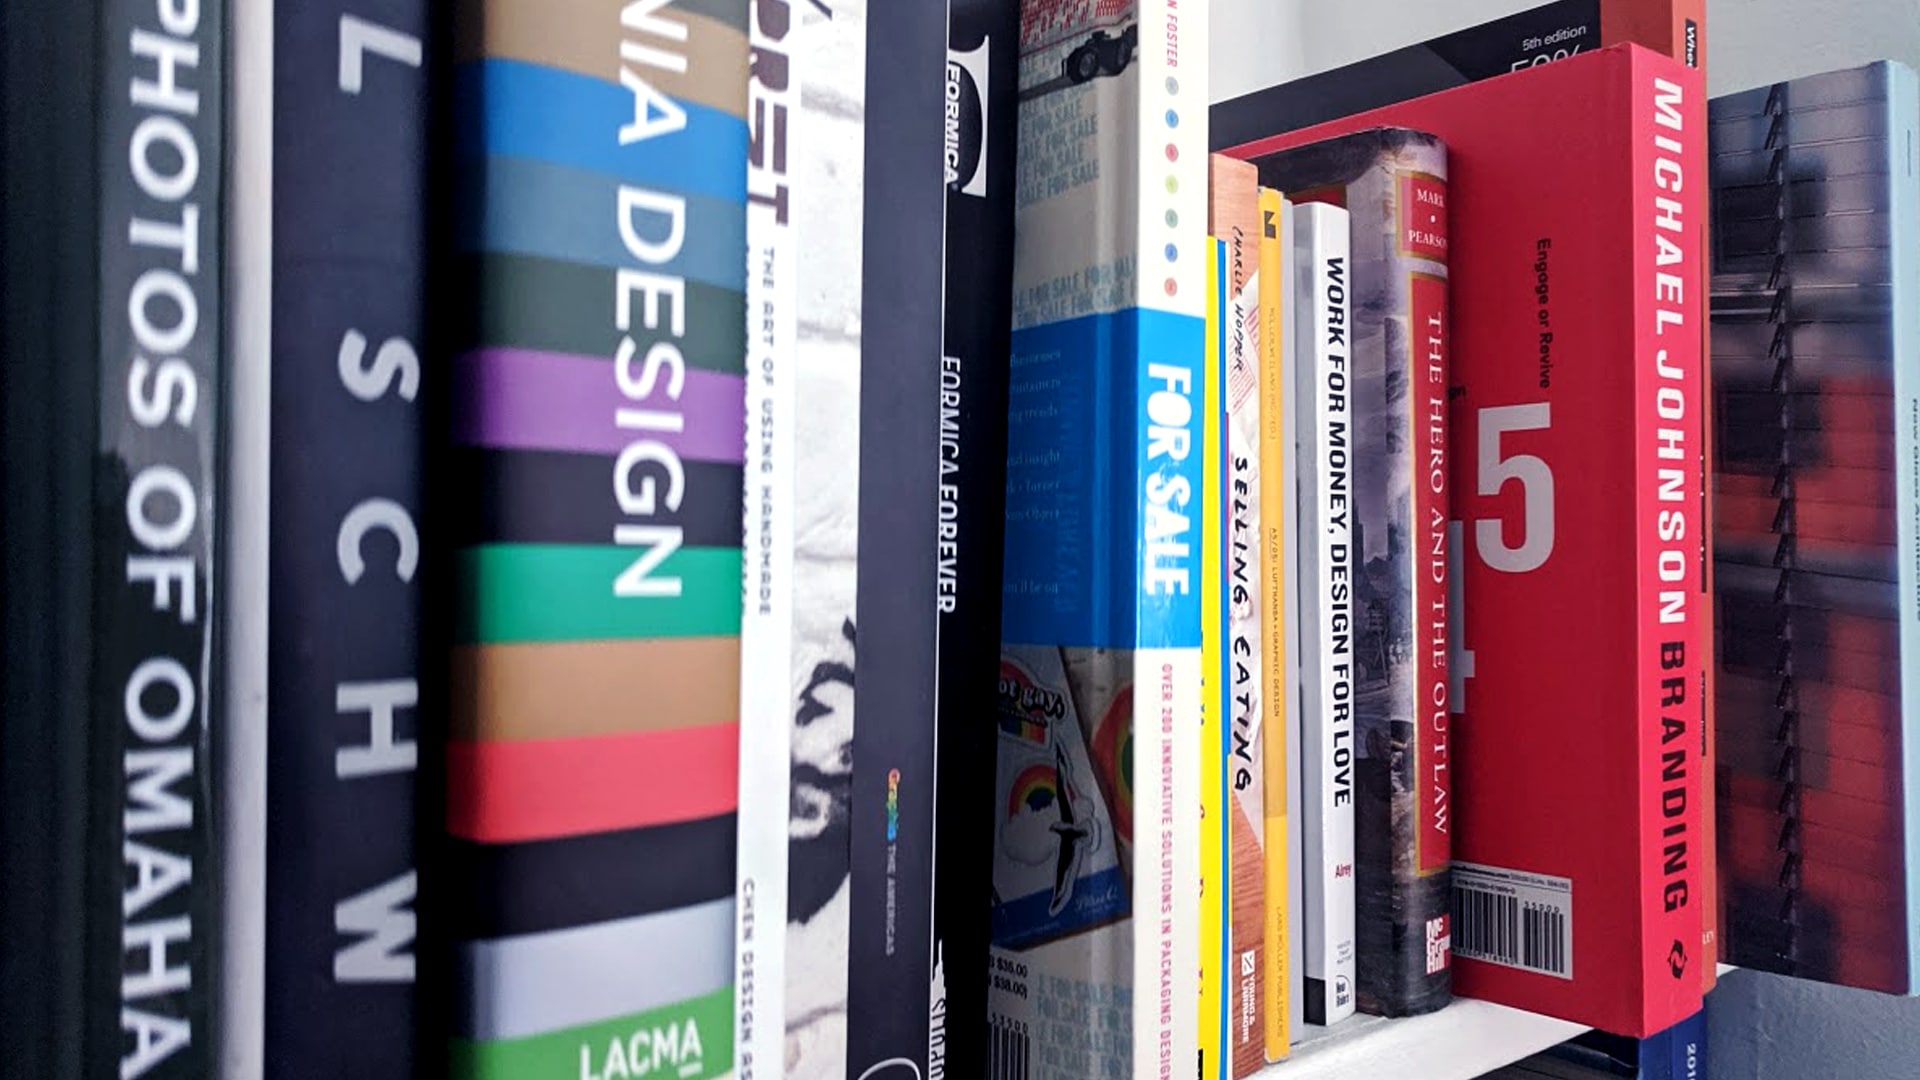 Folk design studio bookshelf with books.